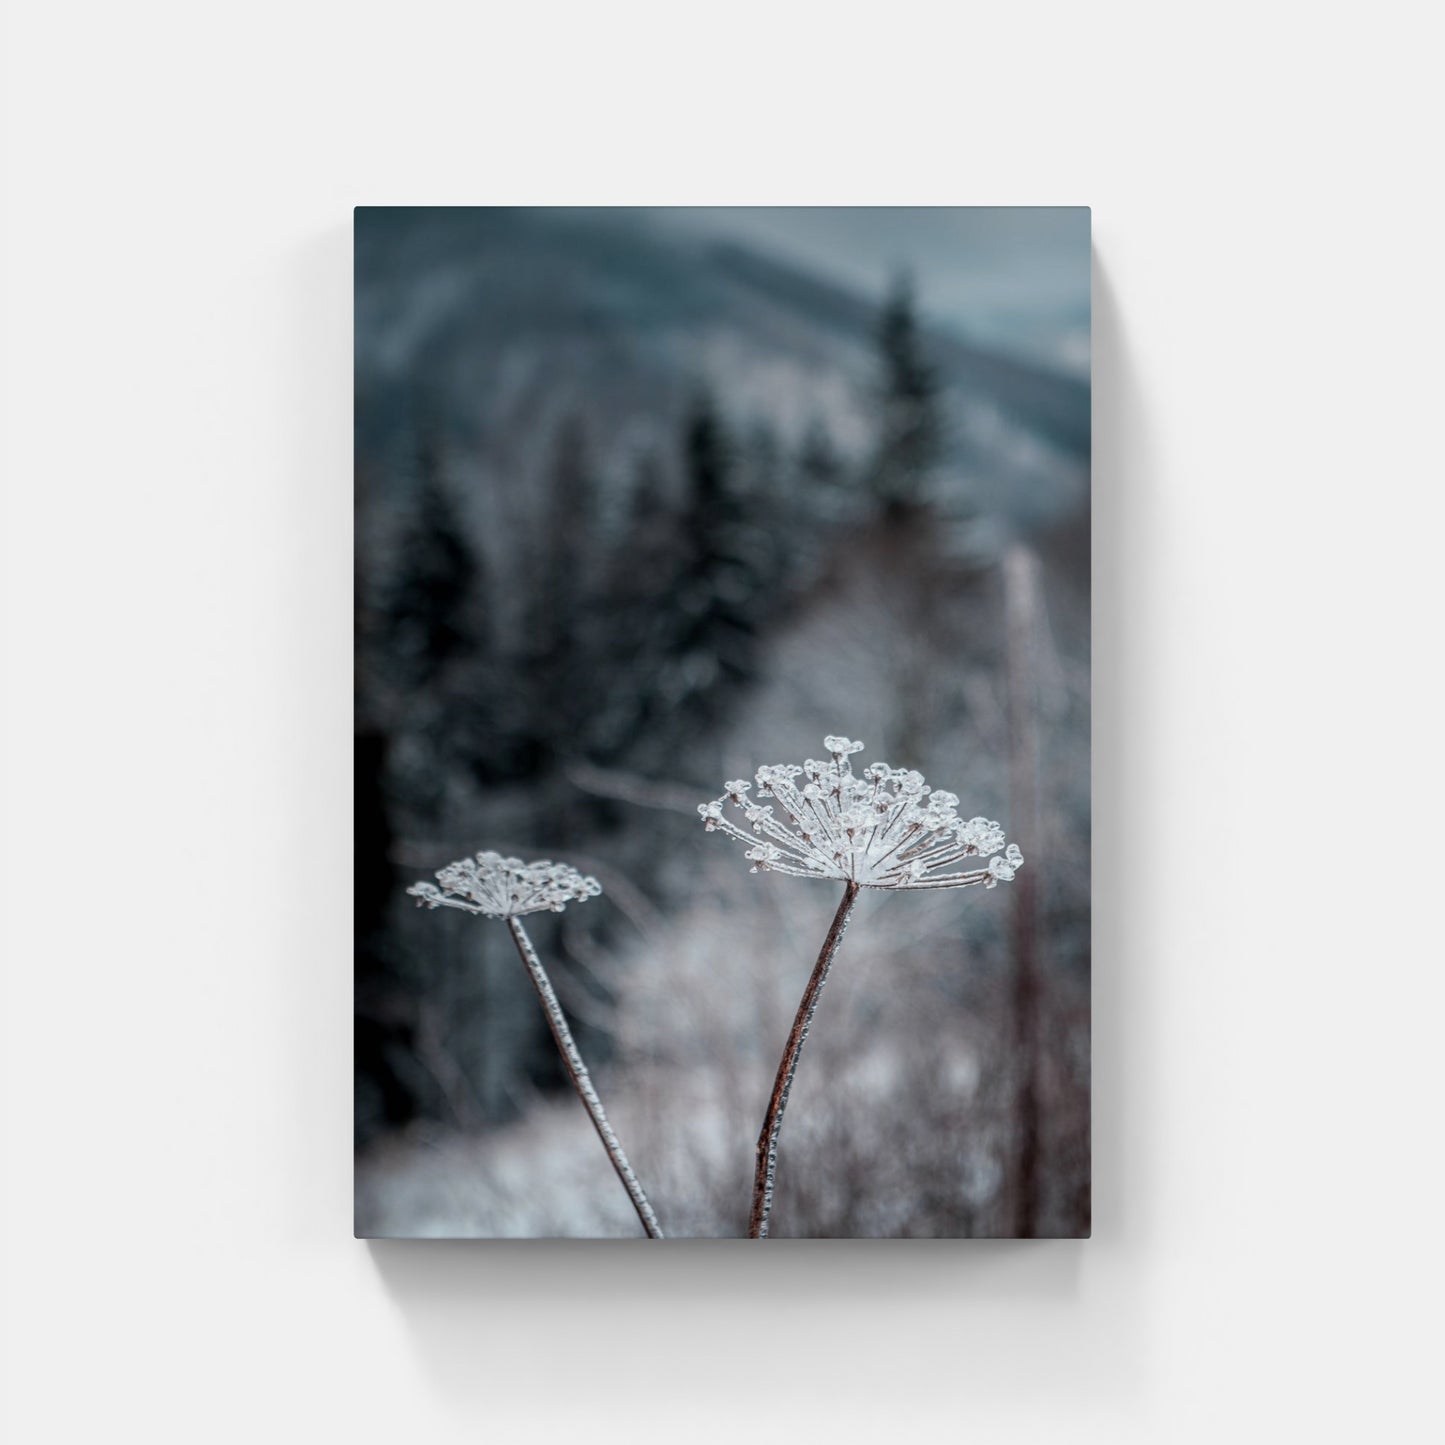 Frozen Flower – Lysa Hora, Czech Republic, 2020